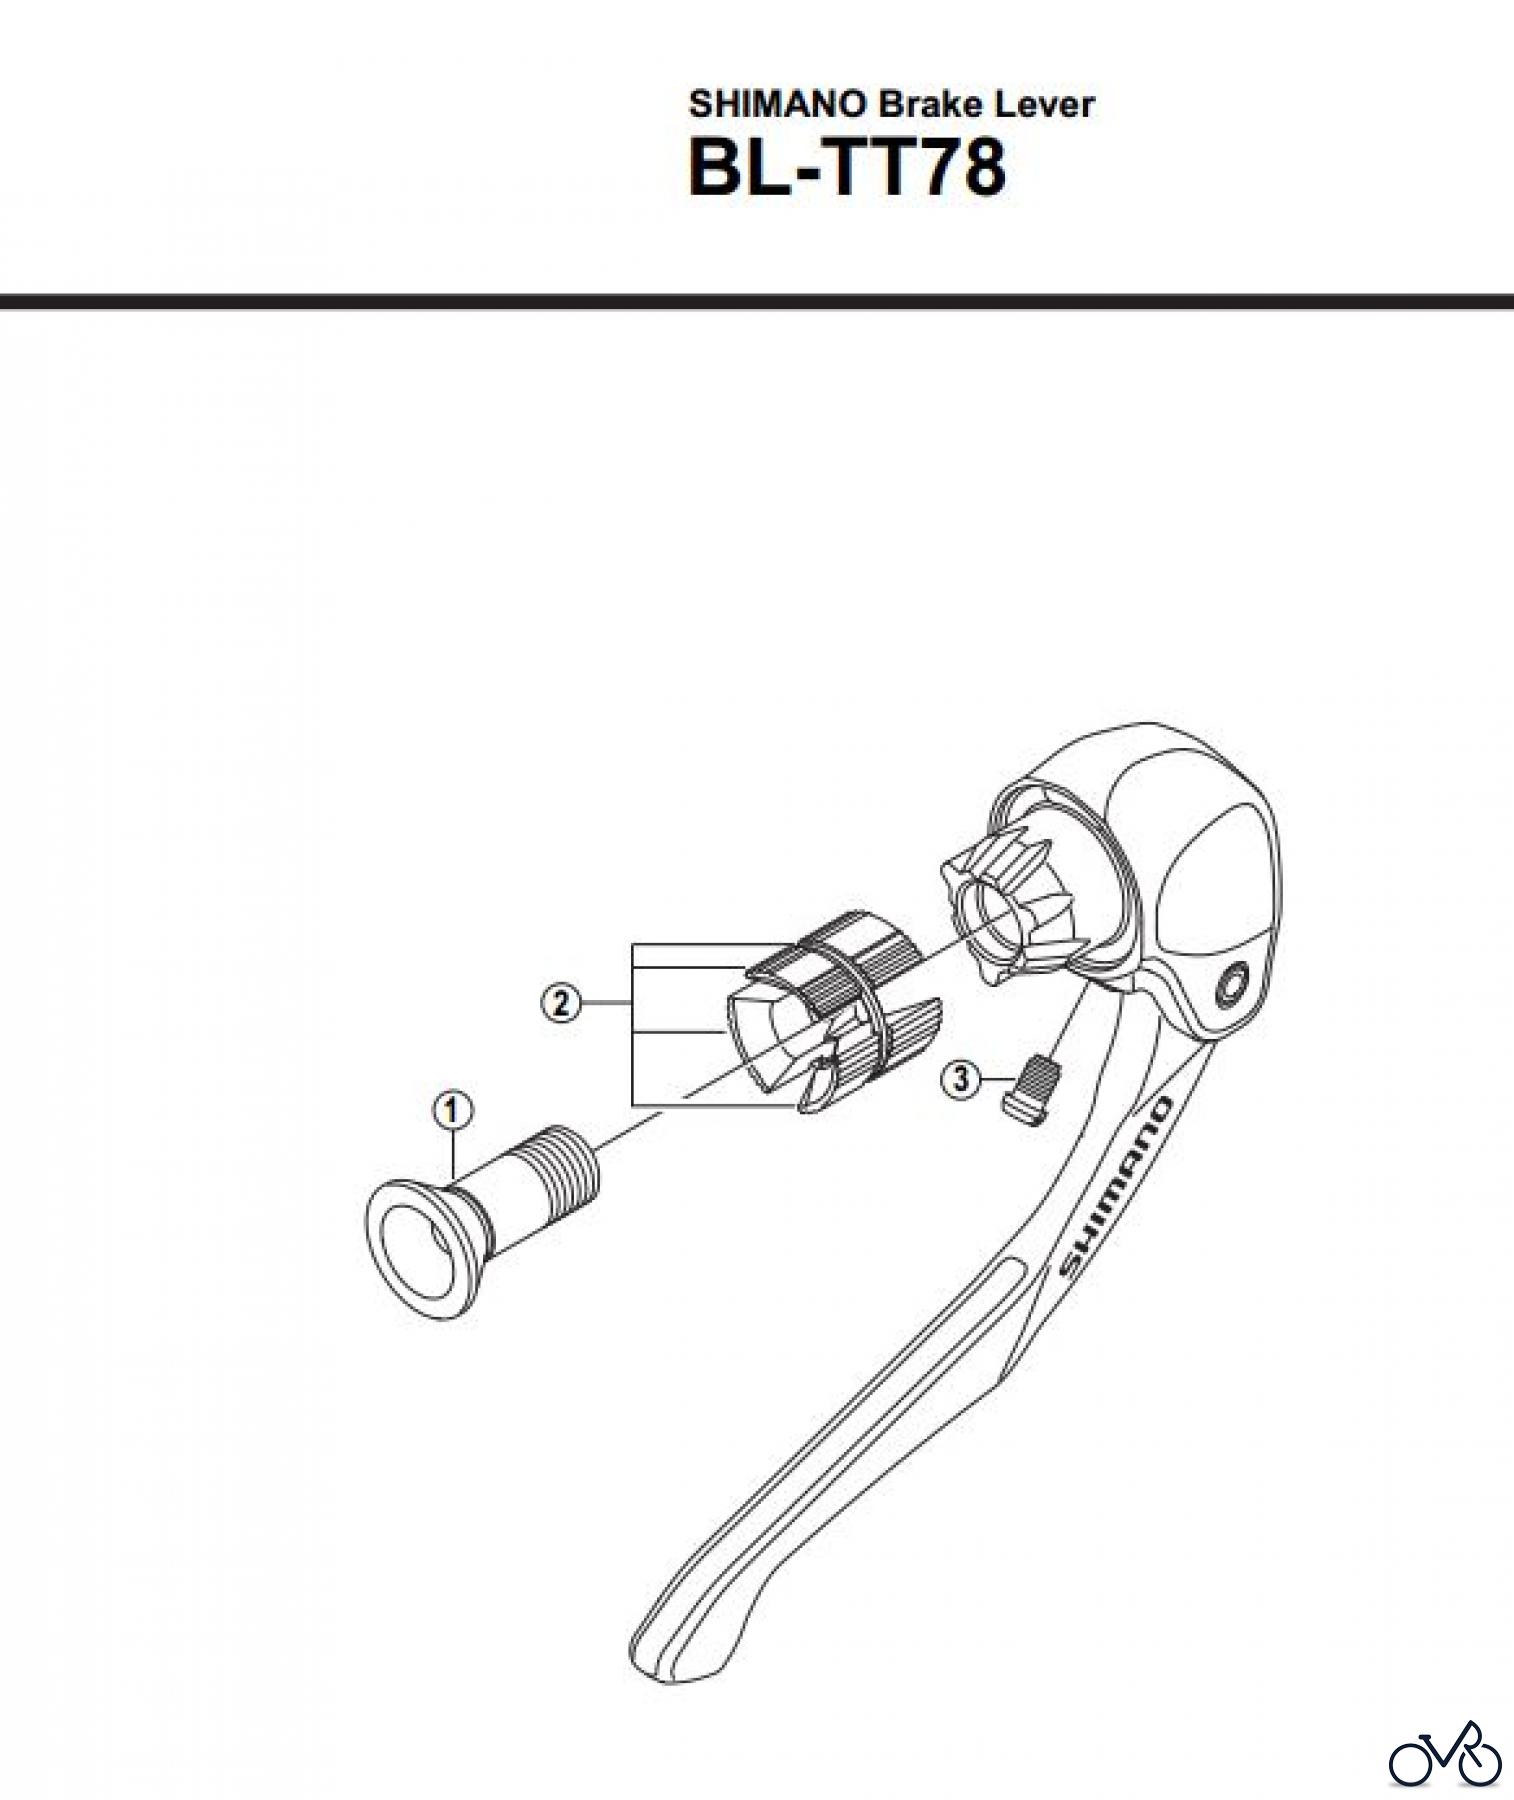  Shimano BL Brake Lever - Bremshebel BL-TT78-2800